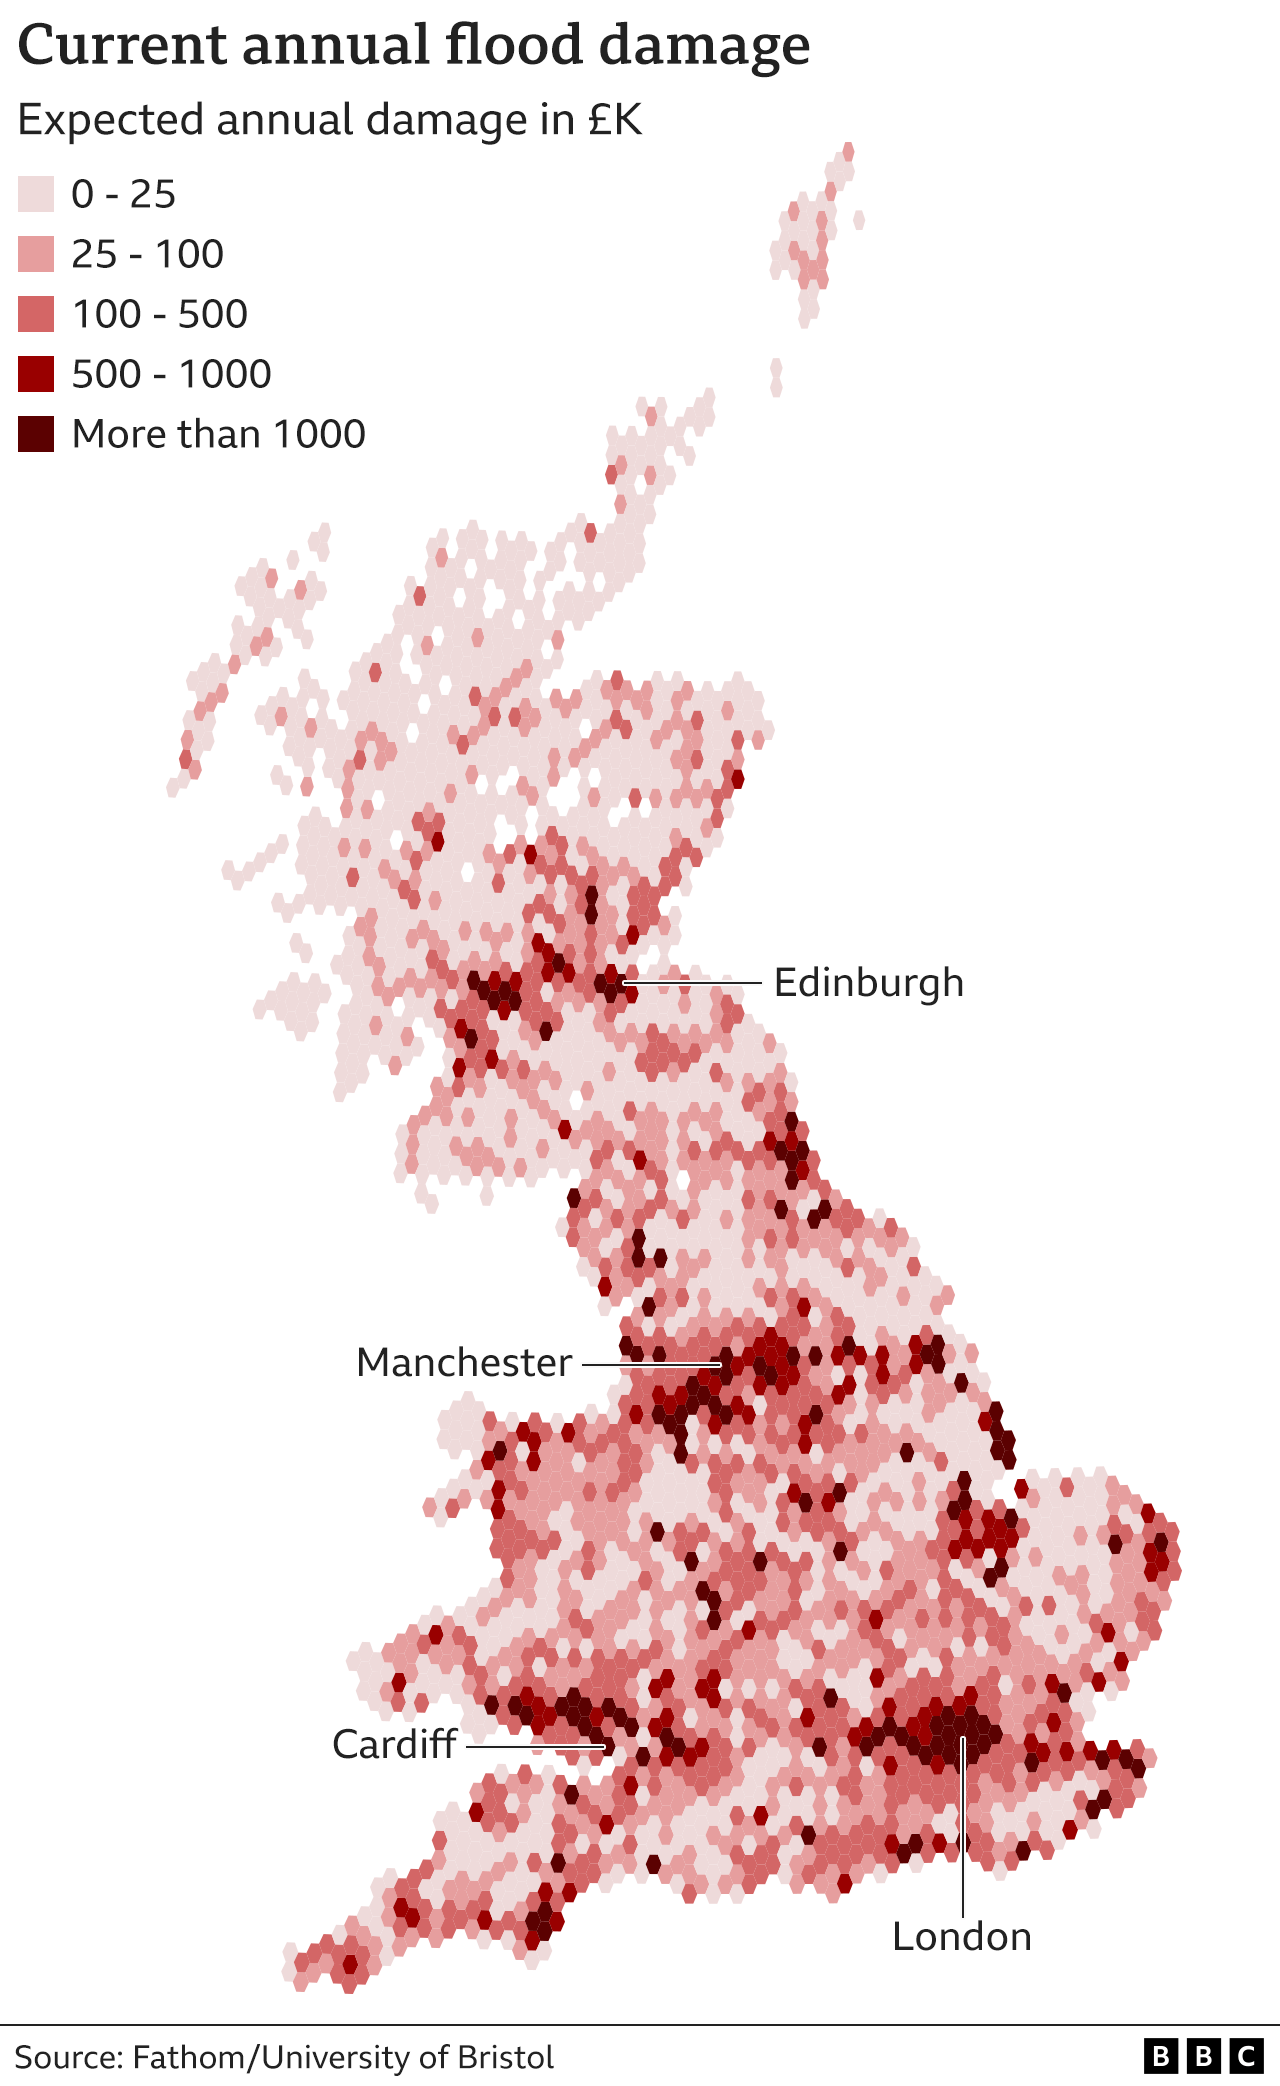 Карта текущего ущерба от наводнения на материковой части Британии, на которой показаны районы с наибольшим ущербом в Лондоне, прибрежные районы на востоке Англии, части Уэльса недалеко от Кардиффа и северных районах Англии, таких как Манчестер